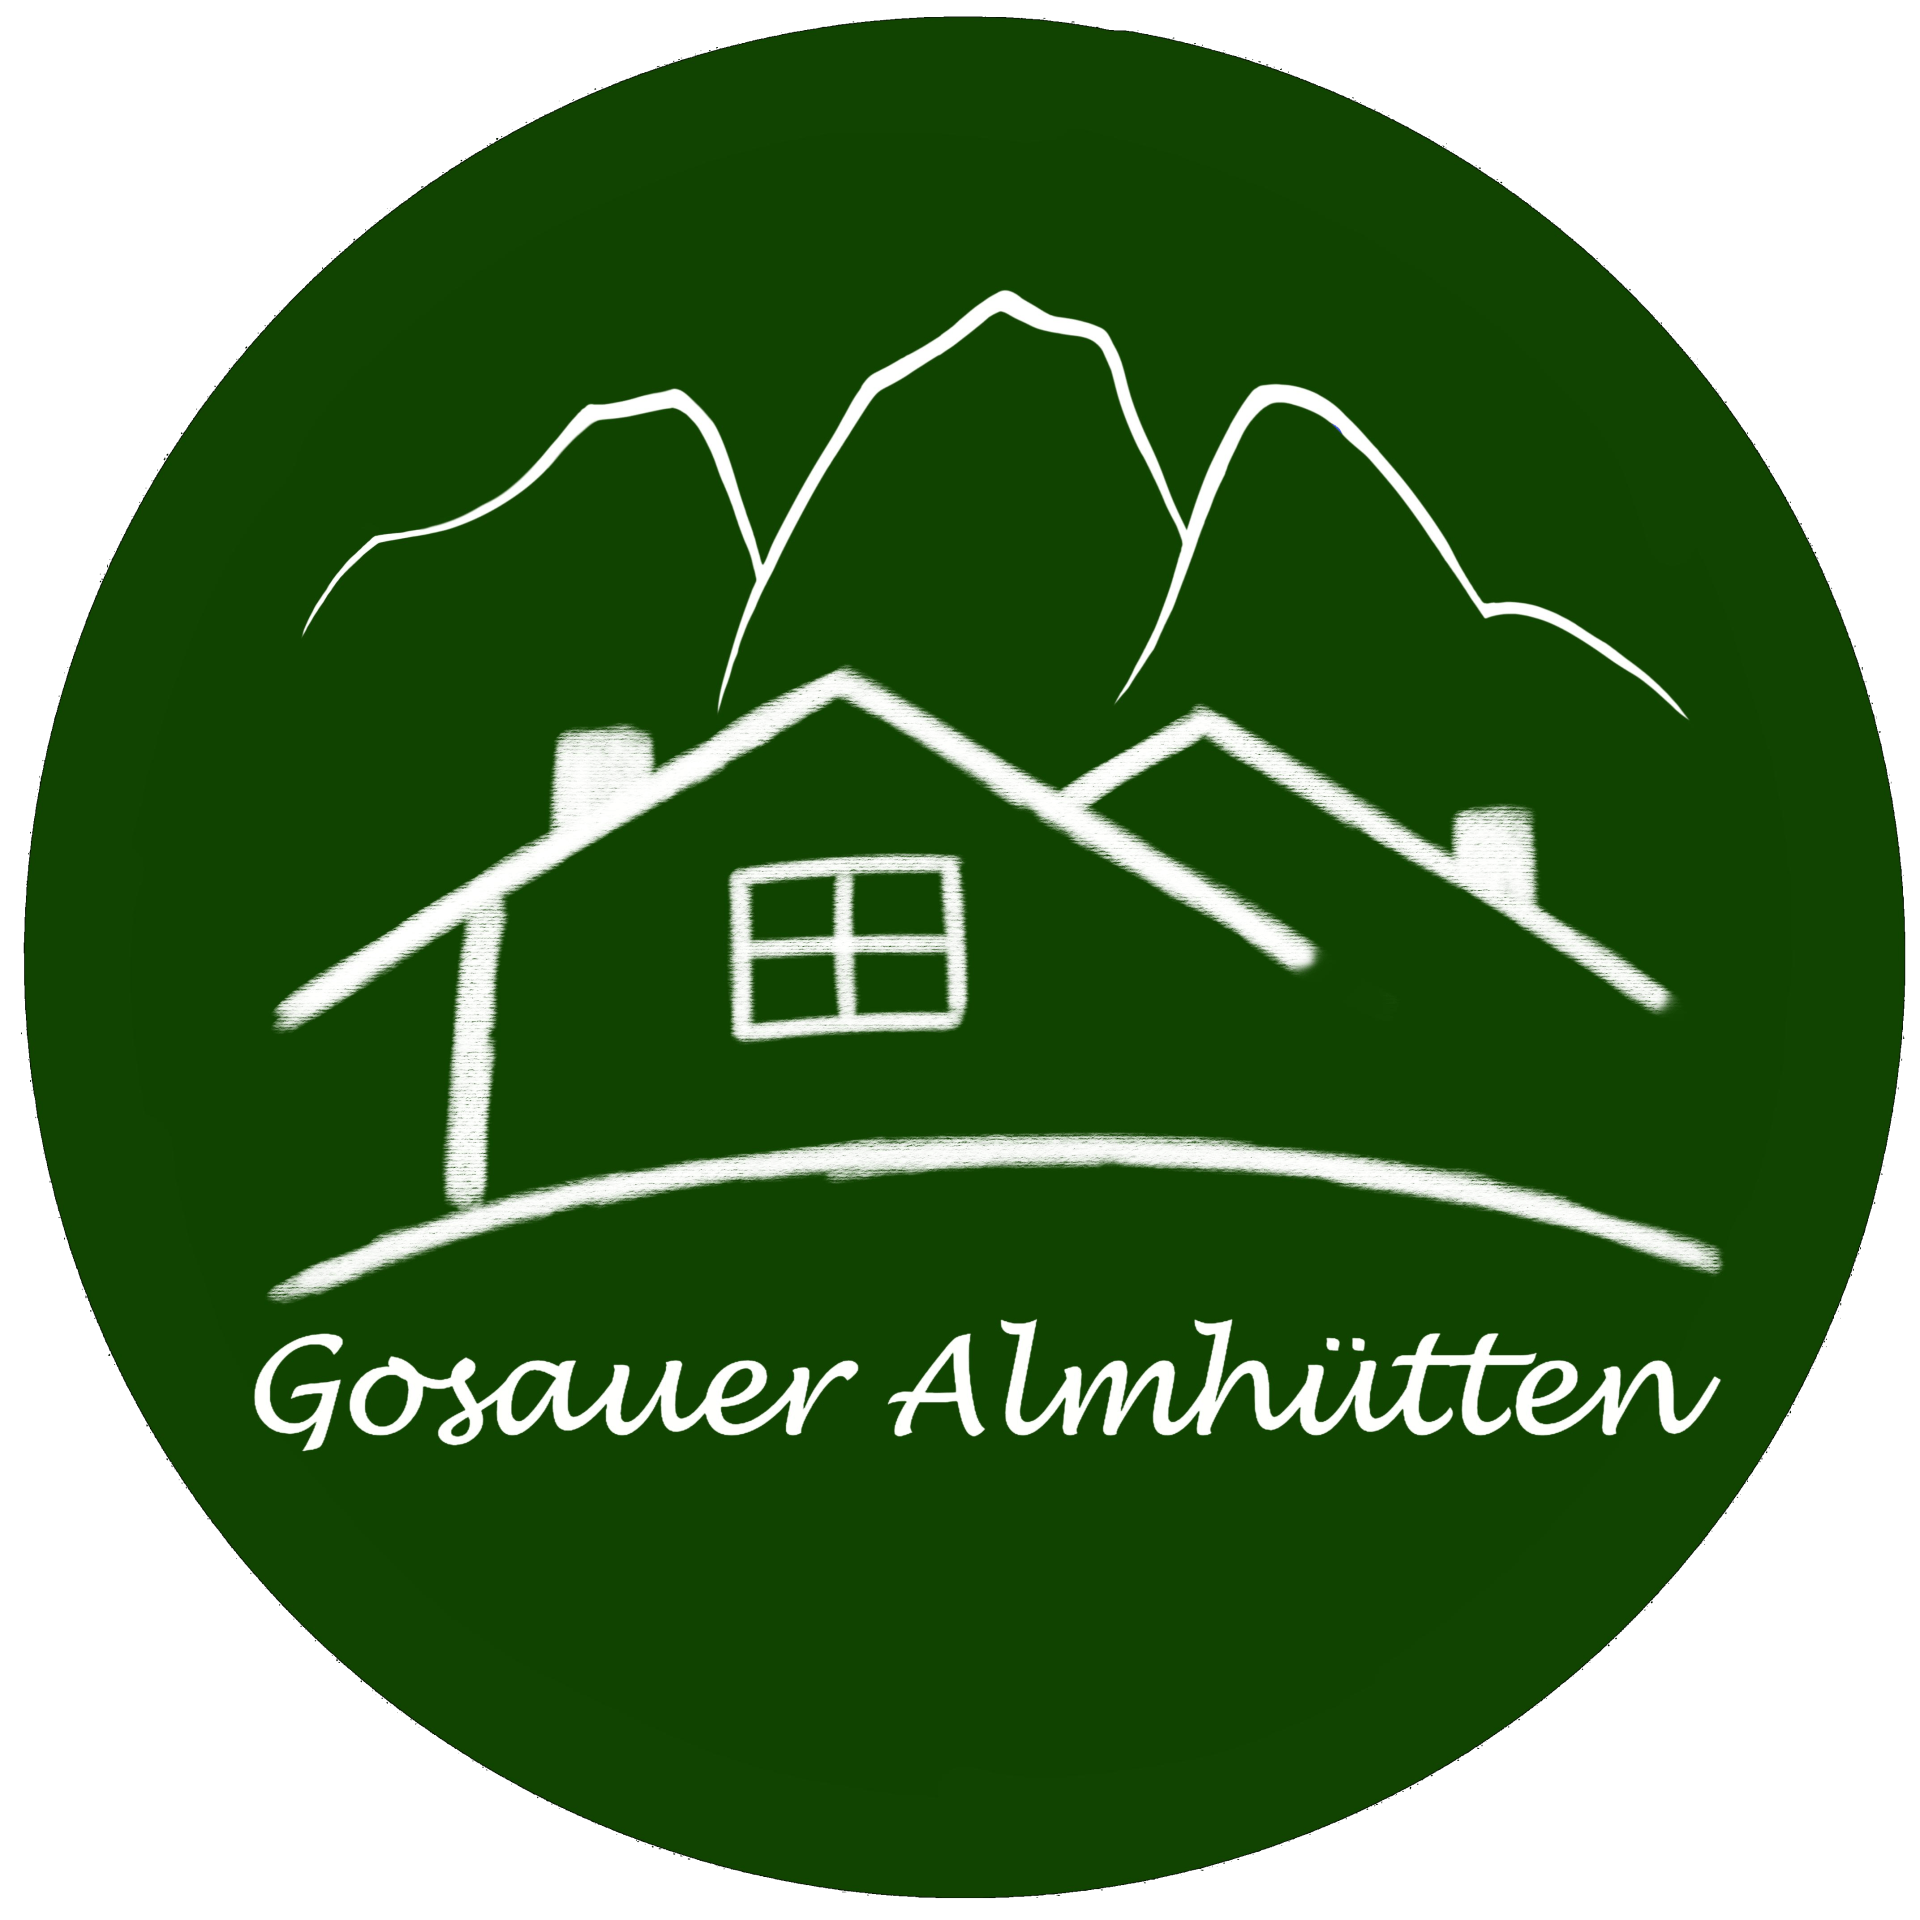 Gosauer Almhütten Logo rund